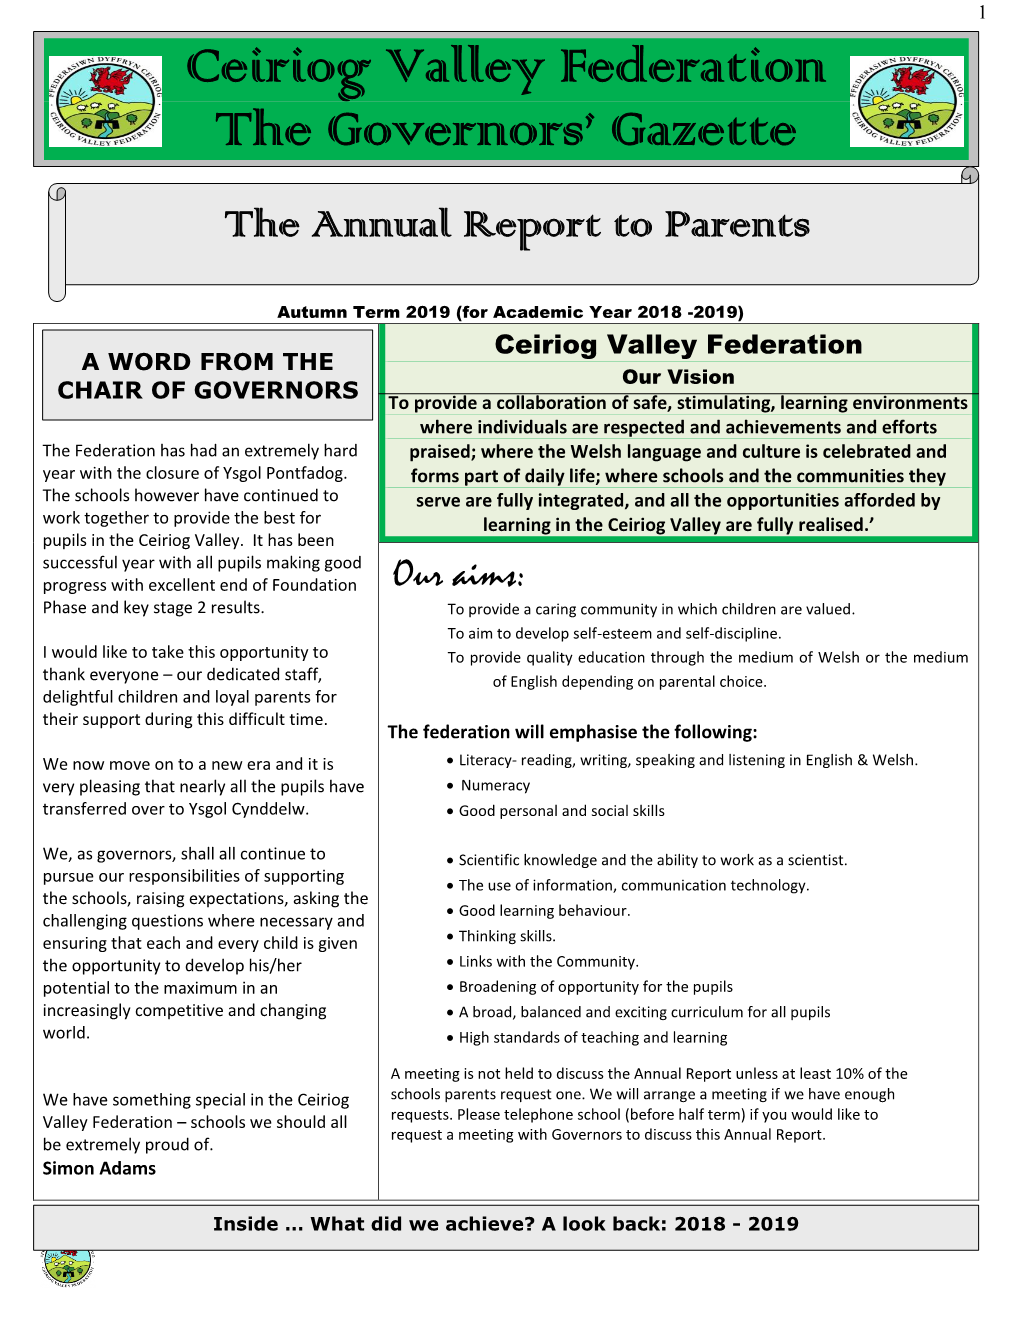 Ceiriog Valley Federation the Governors' Gazette